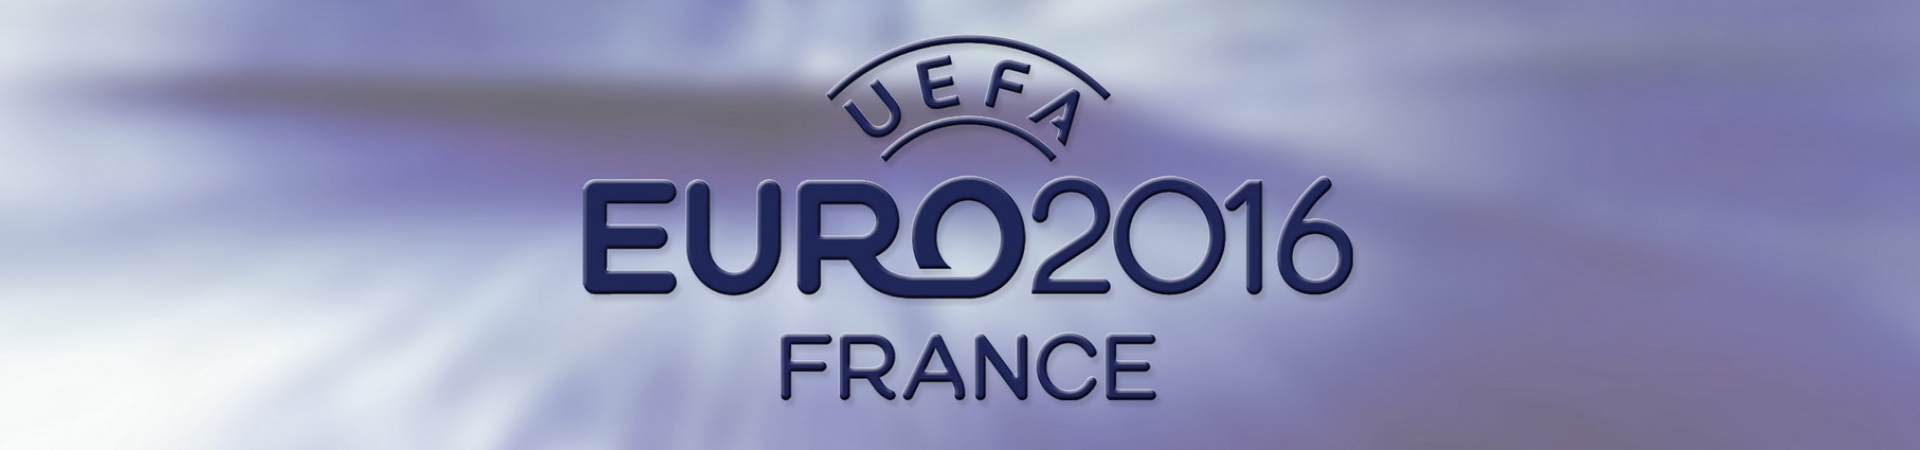 UEFA EURO 2016 Franta